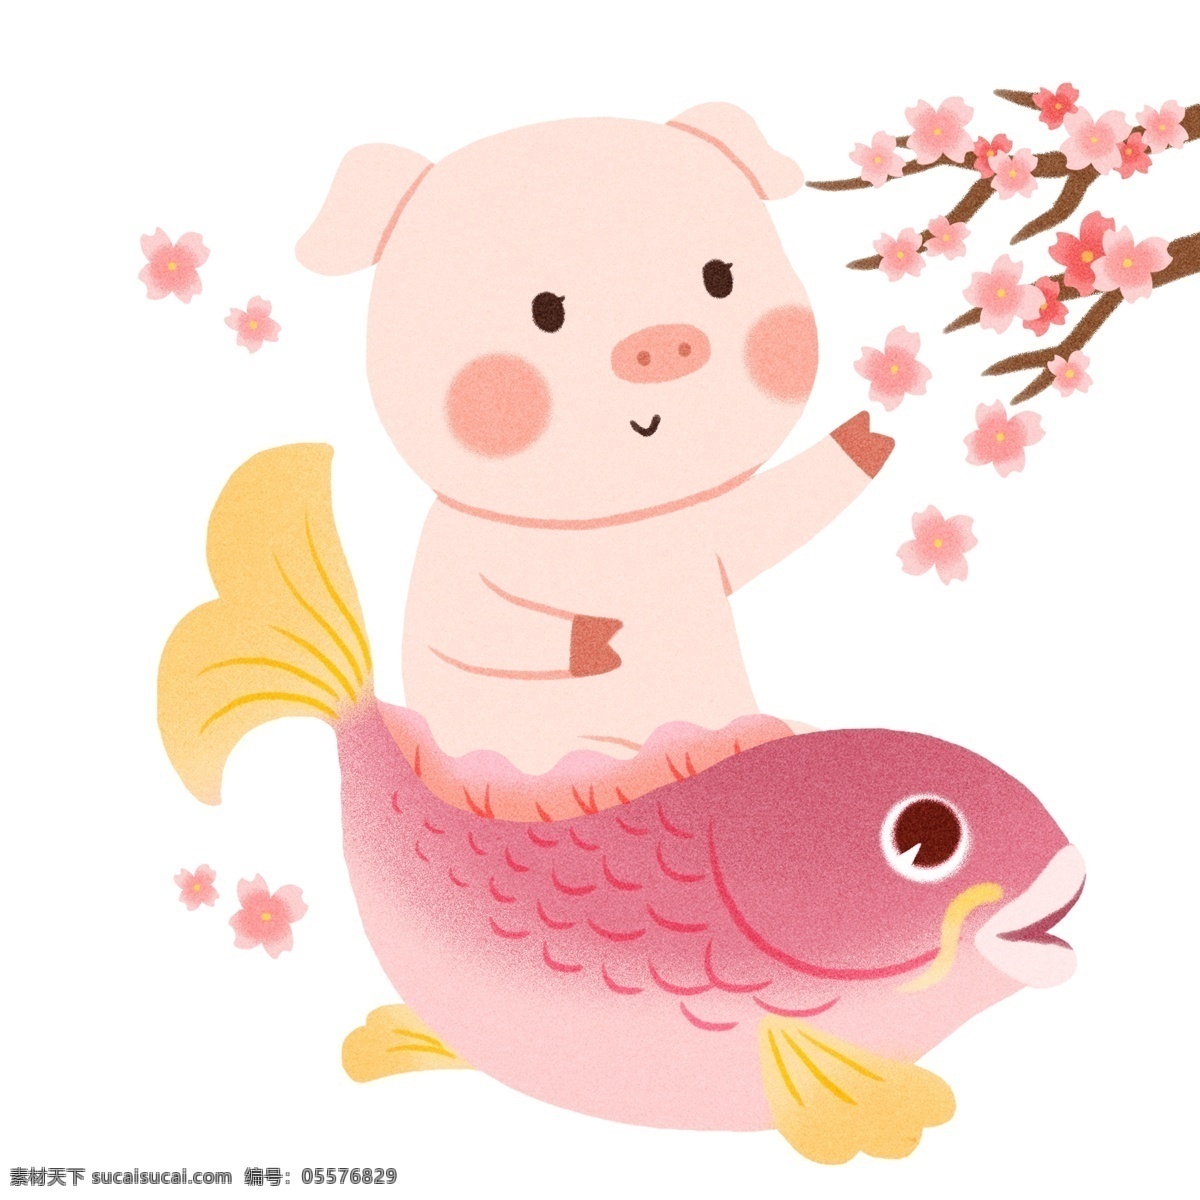 手绘 猪 锦鲤 插画 猪猪 粉红色花朵 花树枝 飘落的花瓣 红色锦鲤 可爱猪猪插画